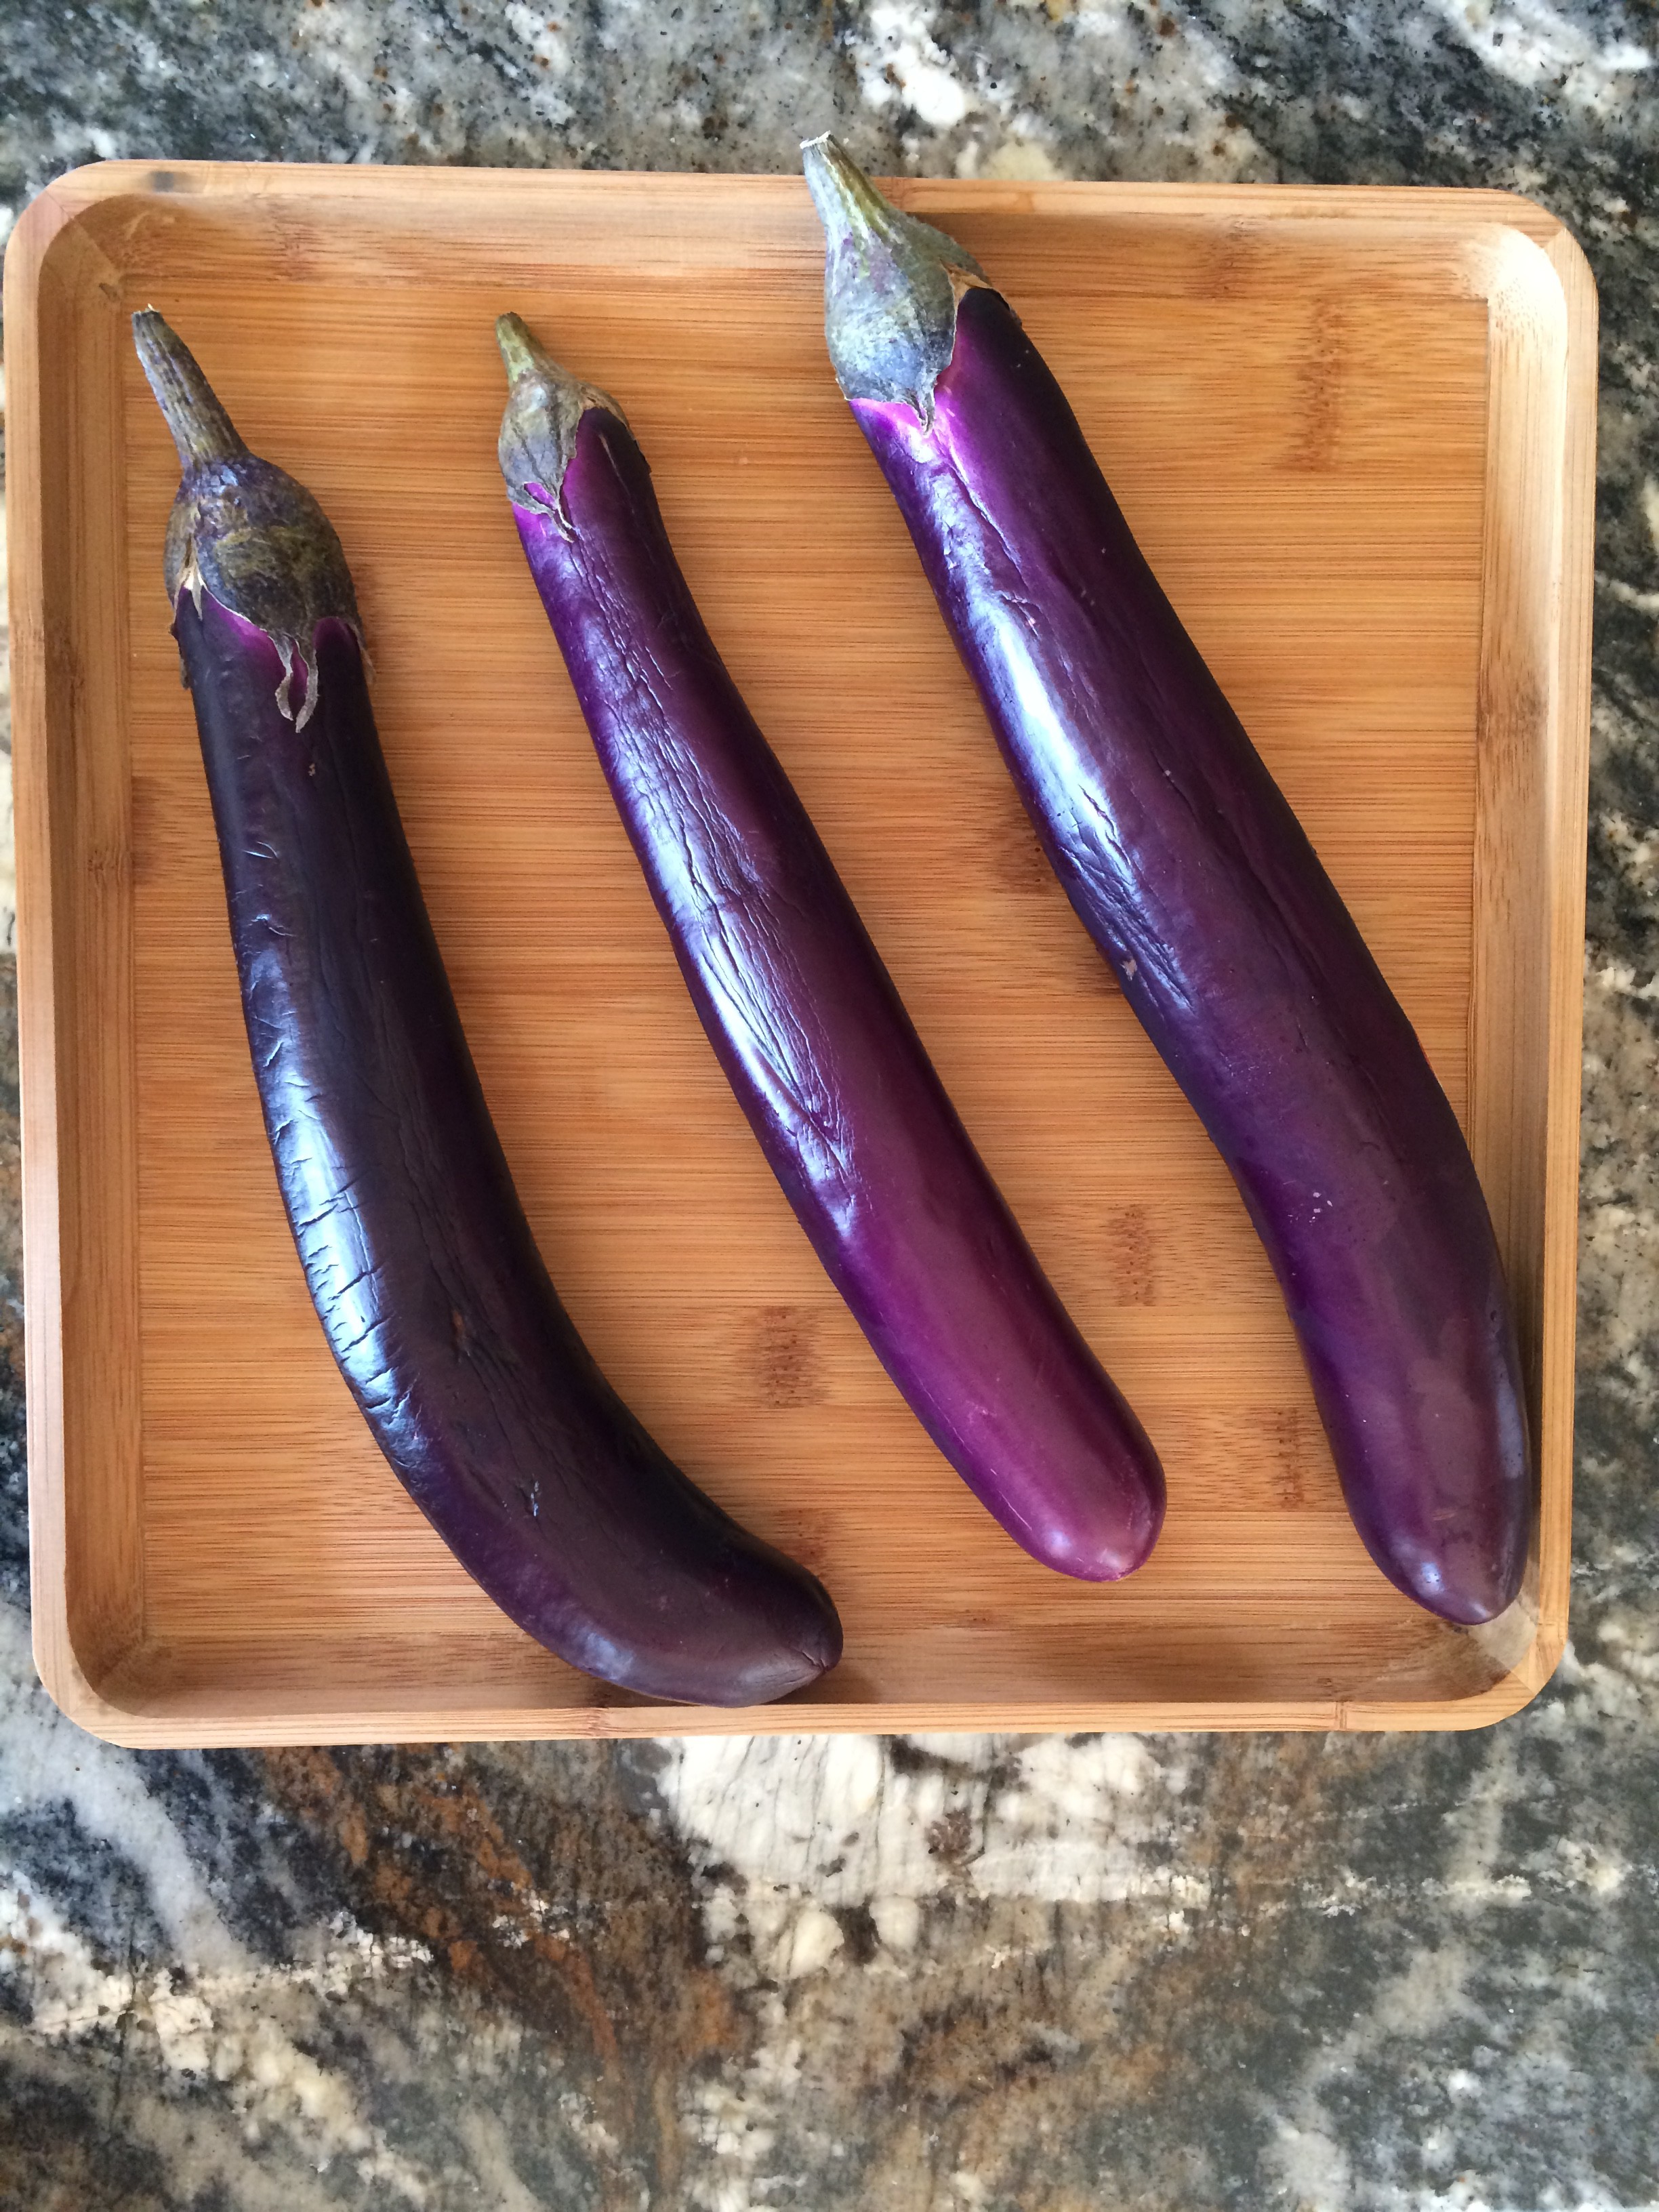 Chinese eggplants